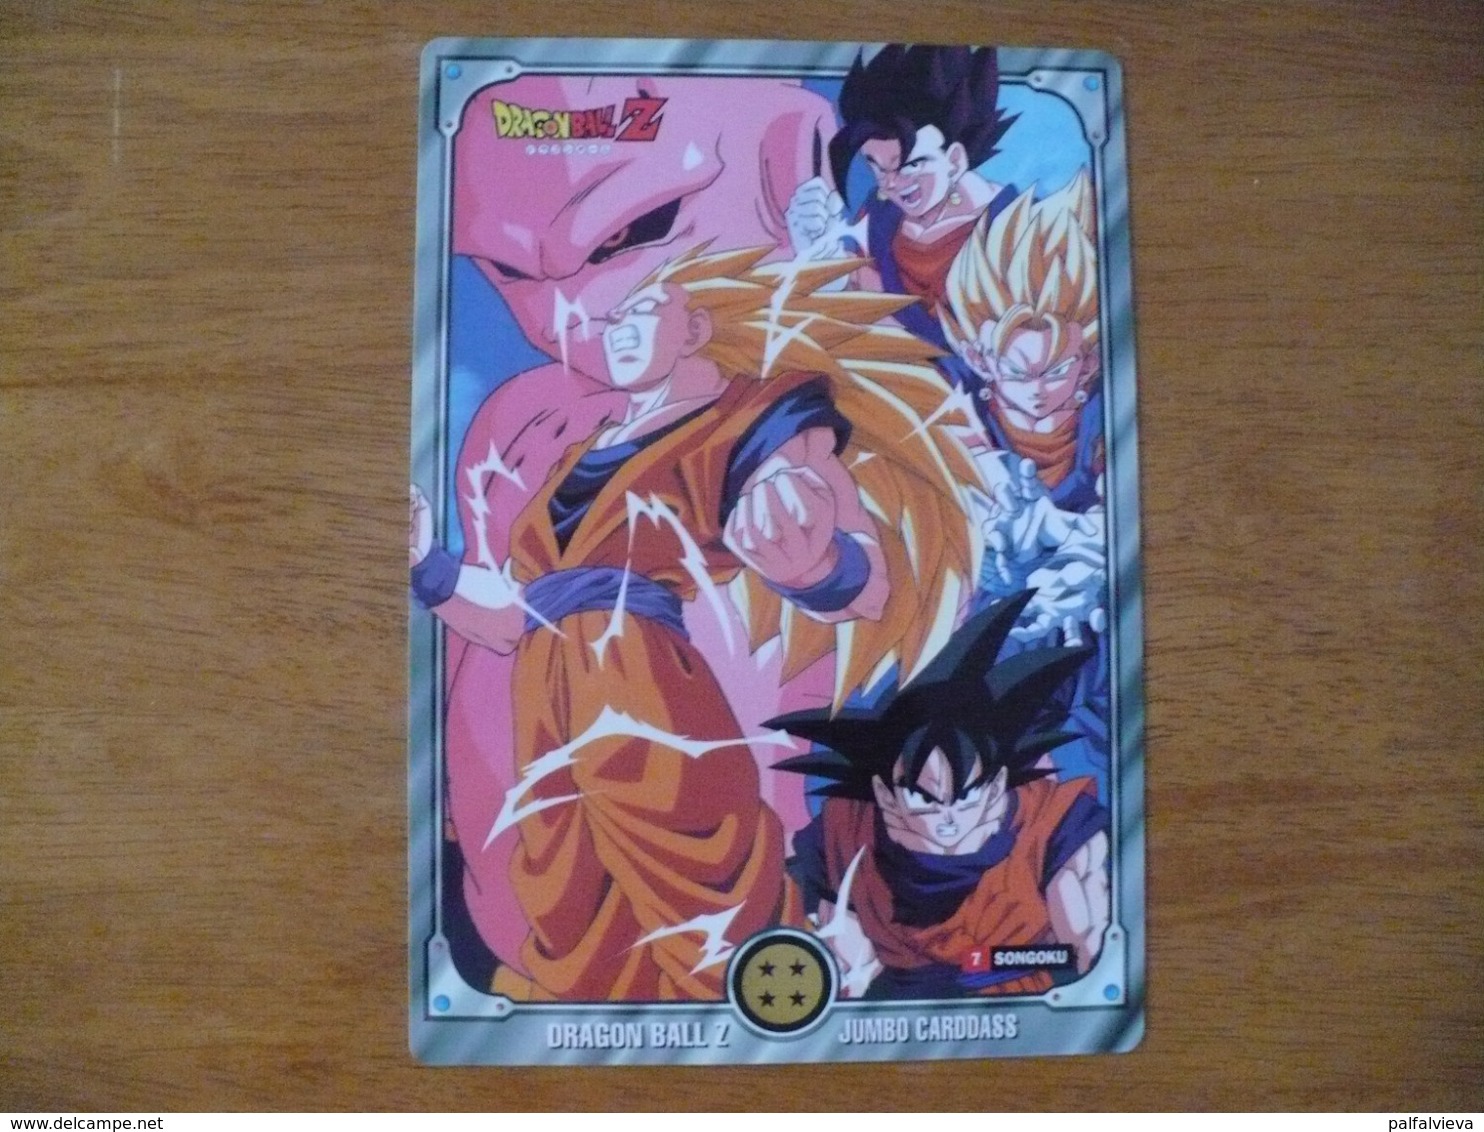 Anime / Manga Trading Card: Dragon Ball 7. (Jumbo ) - Dragonball Z